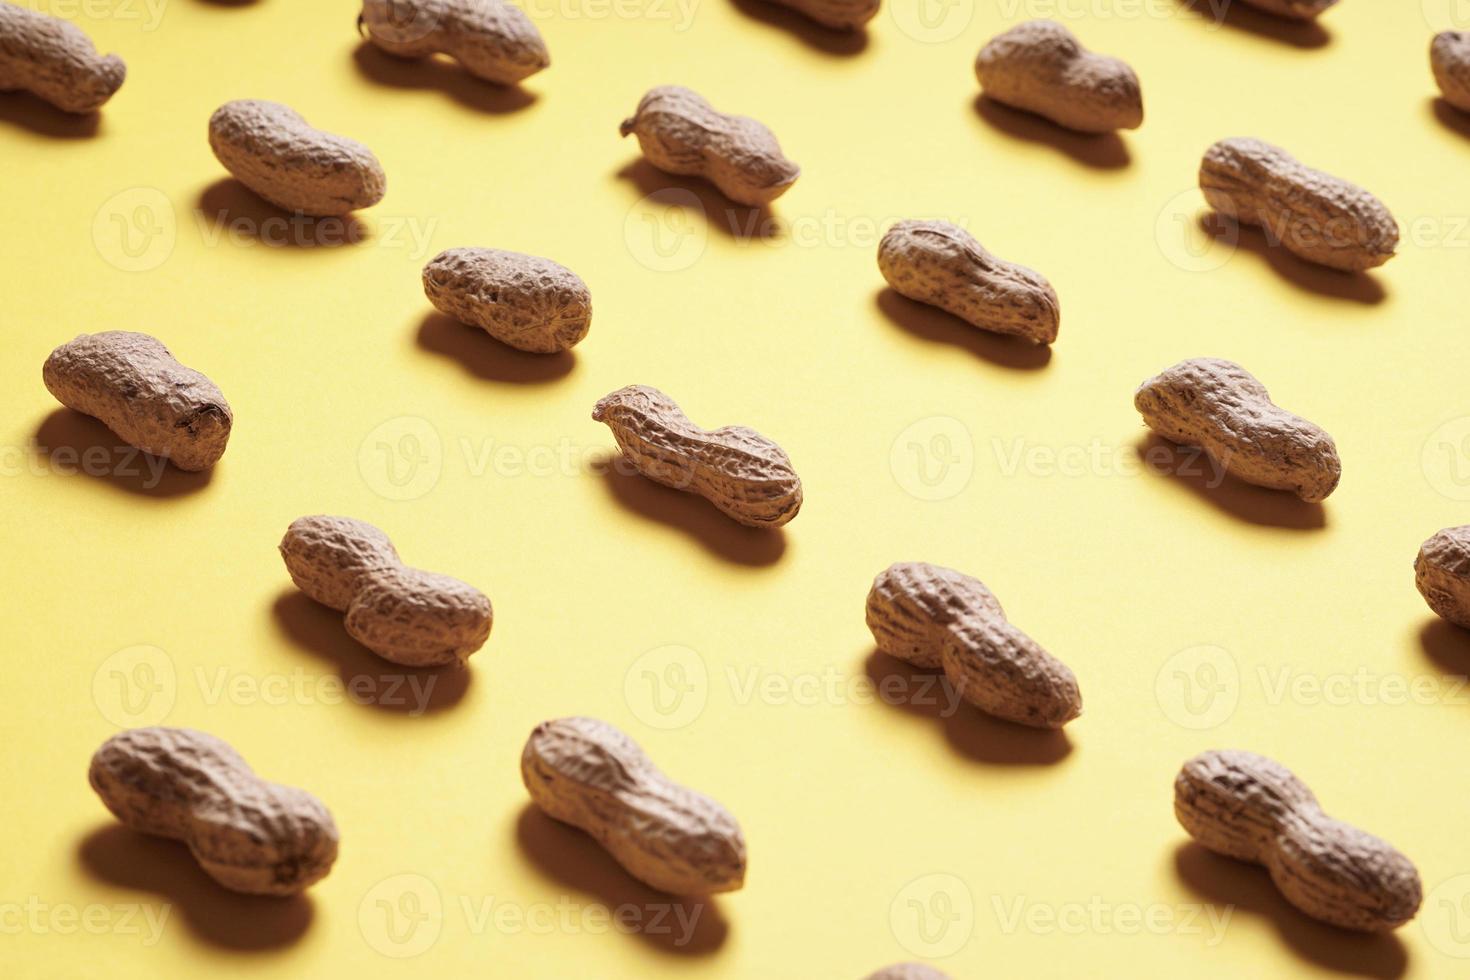 Erdnüsse in Reihen auf gelbem Hintergrund angeordnet foto